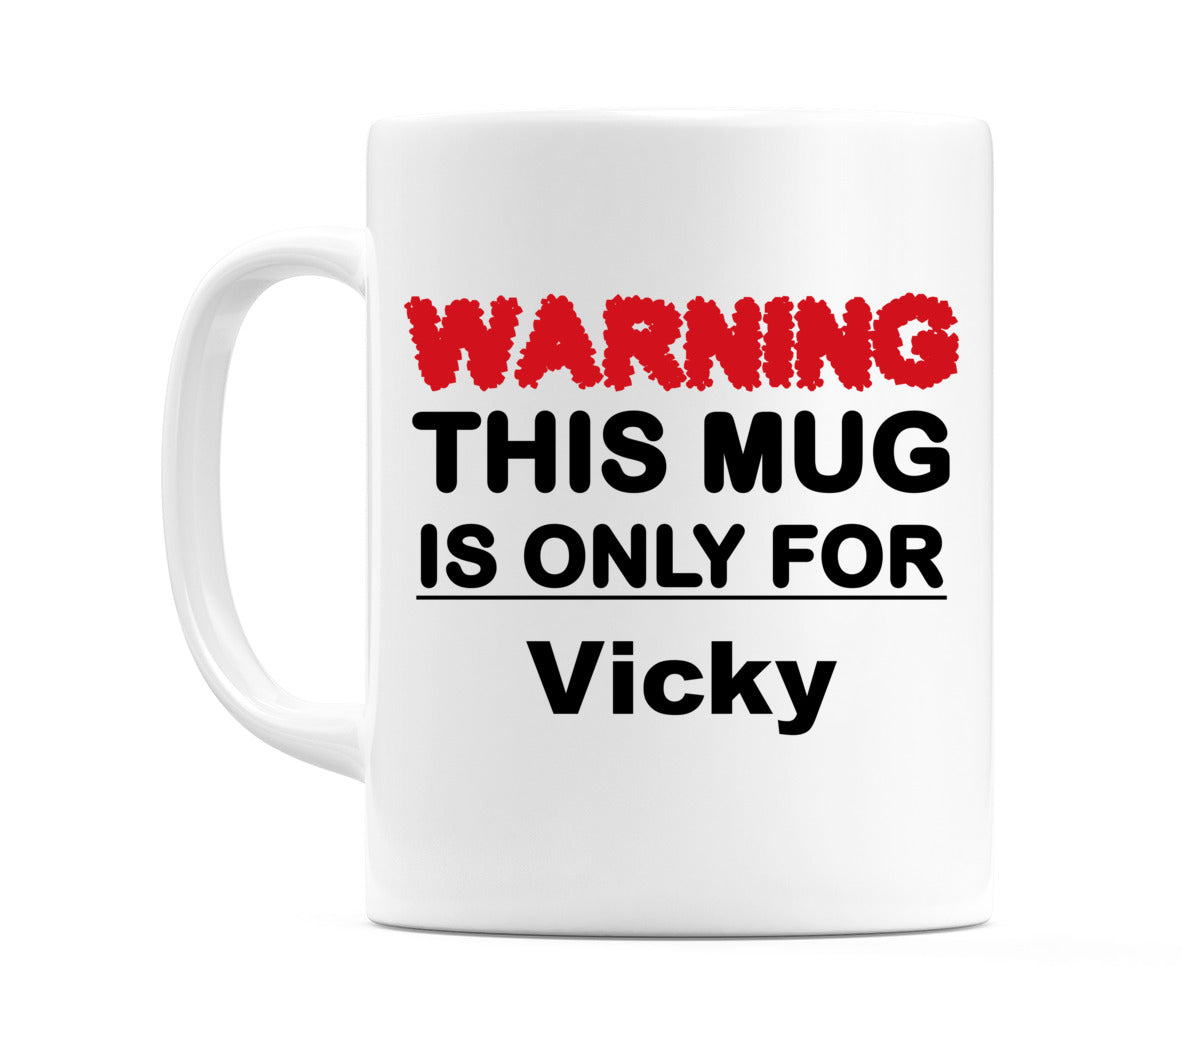 Warning This Mug is ONLY for Vicky Mug